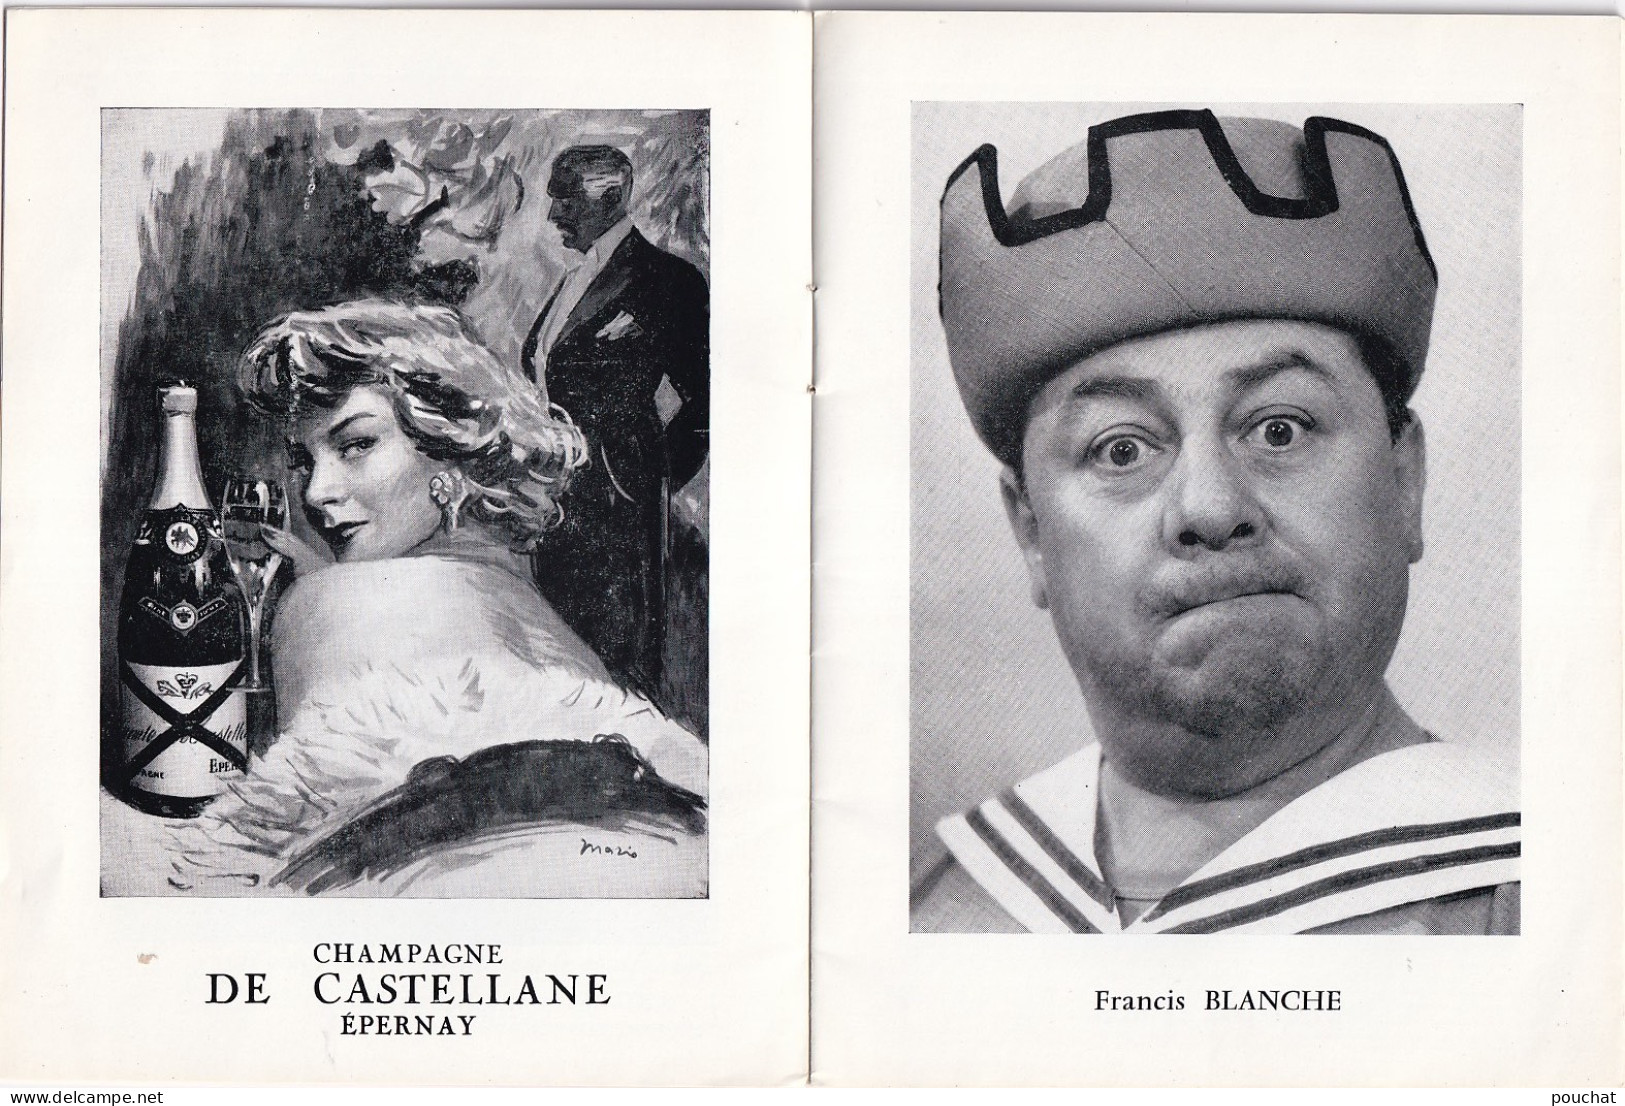 AA+ 132- LIVRET PIECE " LES ESCARGOTS MEURENT DEBOUT " DE F. BLANCHE THEATRE FONTAINE , PARIS - COMEDIENS ET PUBLICITES  - Theater